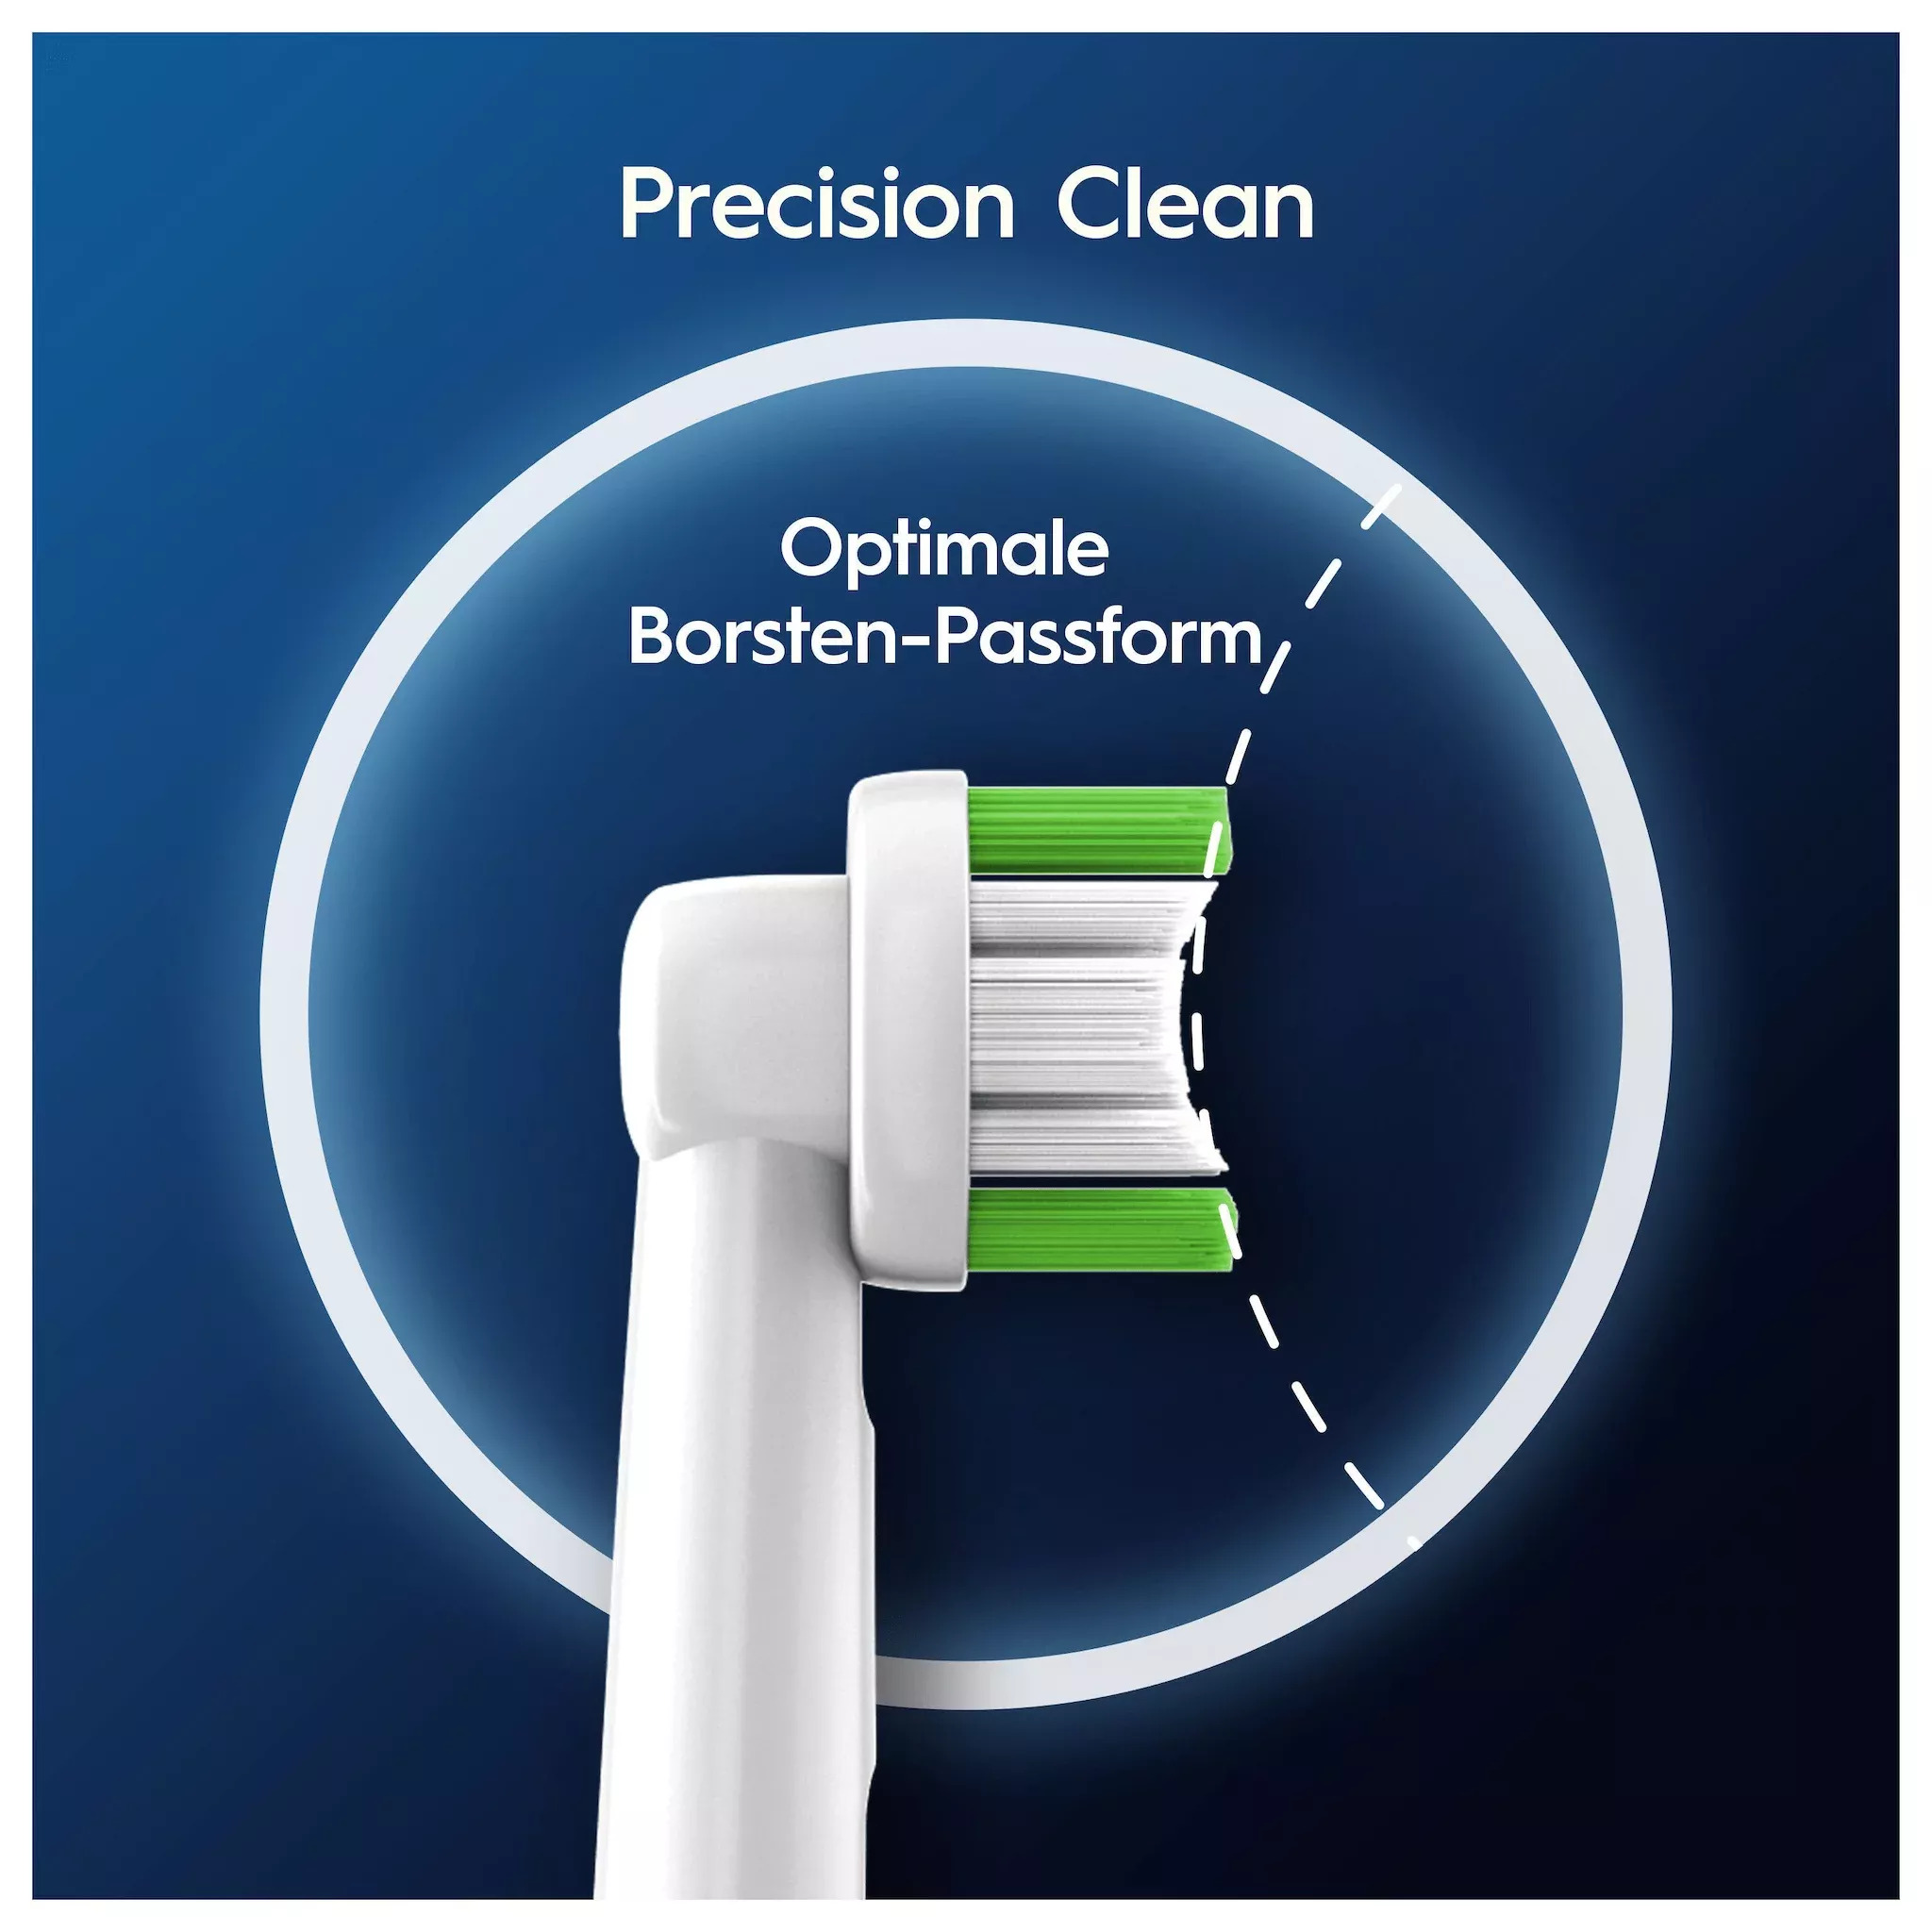 Oral-B Aufsteckbürsten Pro Precision Clean 10er 